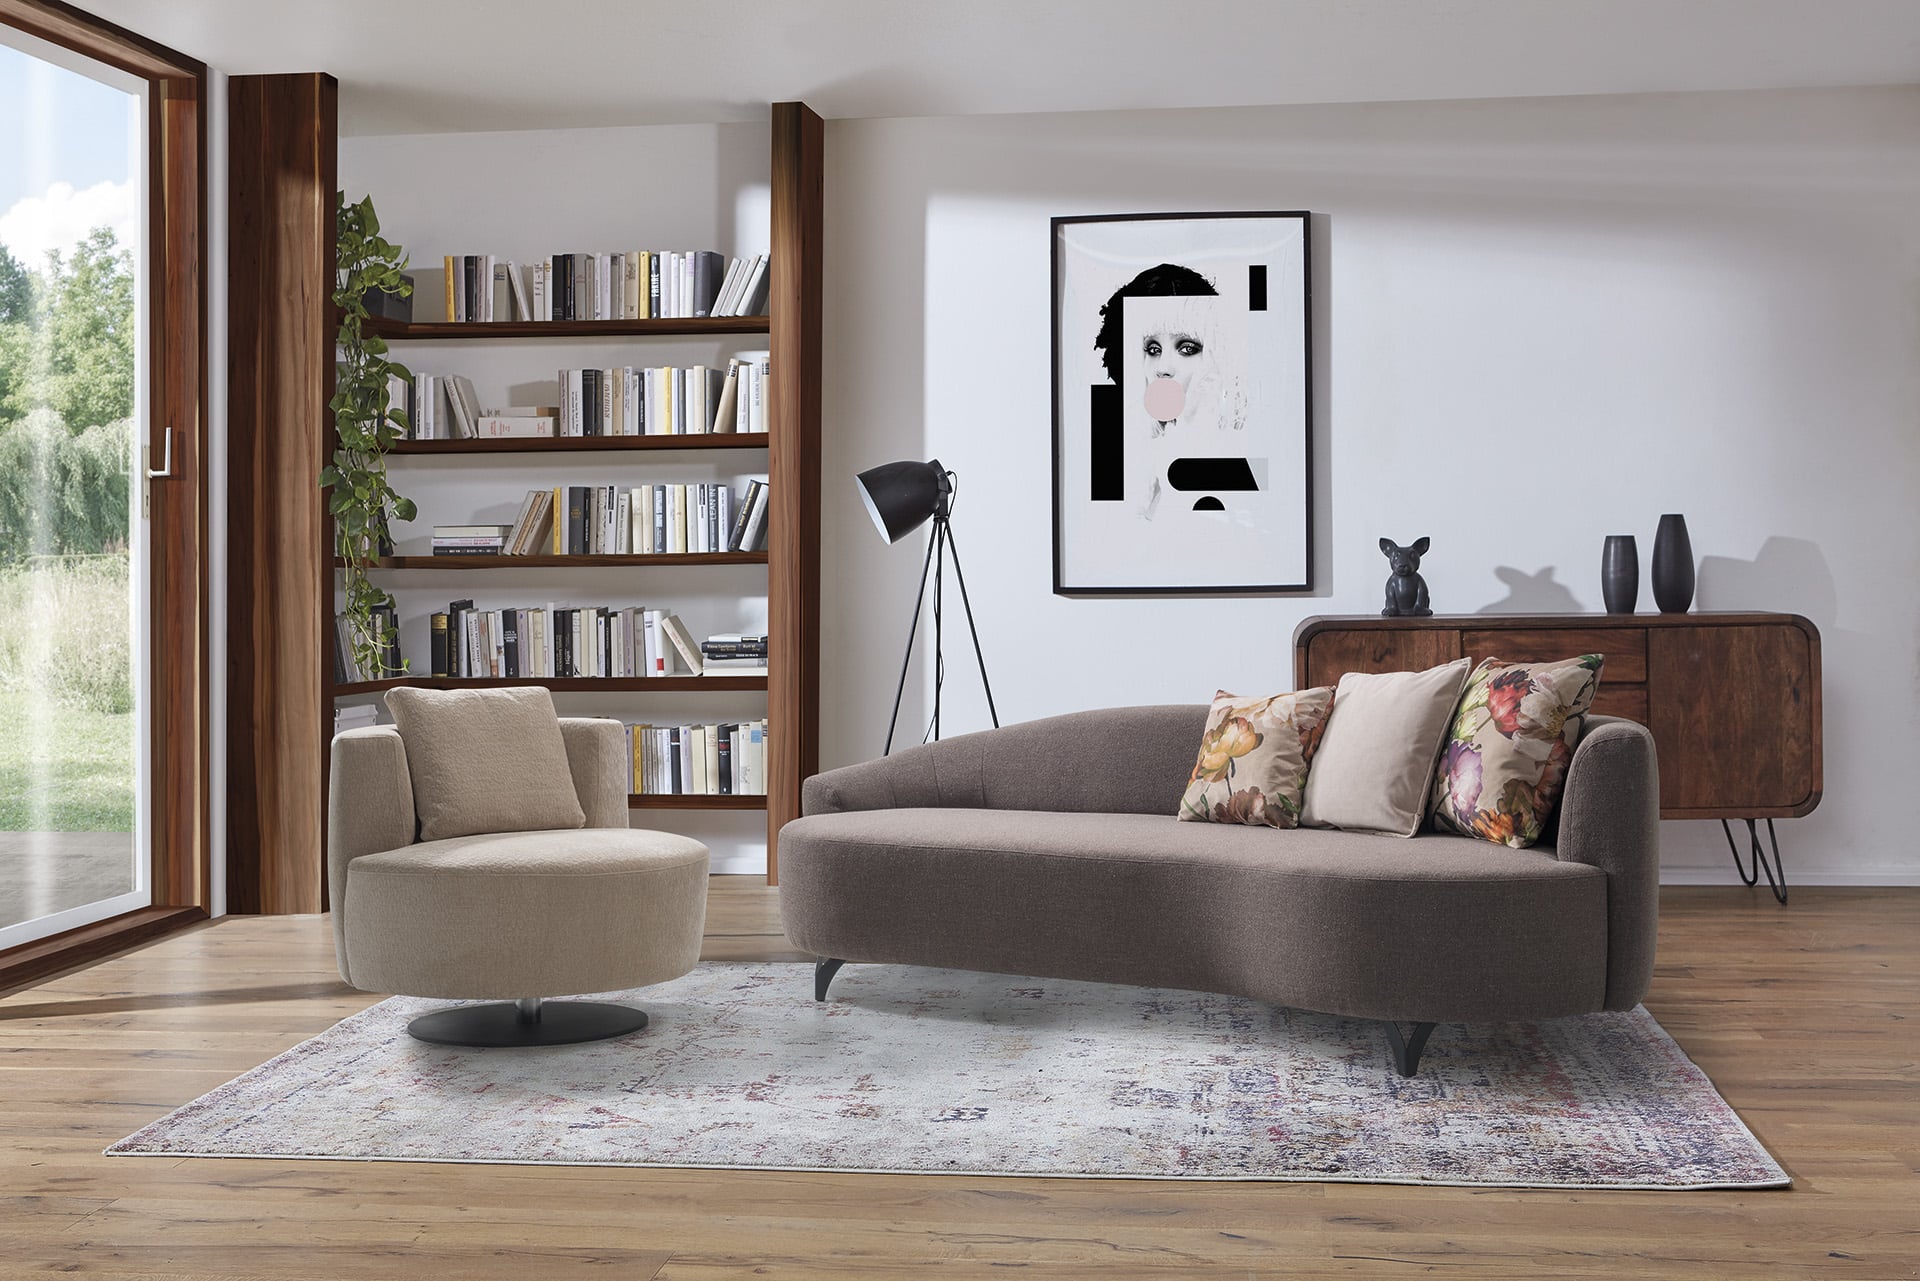 Bank und Sessel der Serie PABLO von sedda Polstermöbelwerke in stimmiger Wohnsituation.